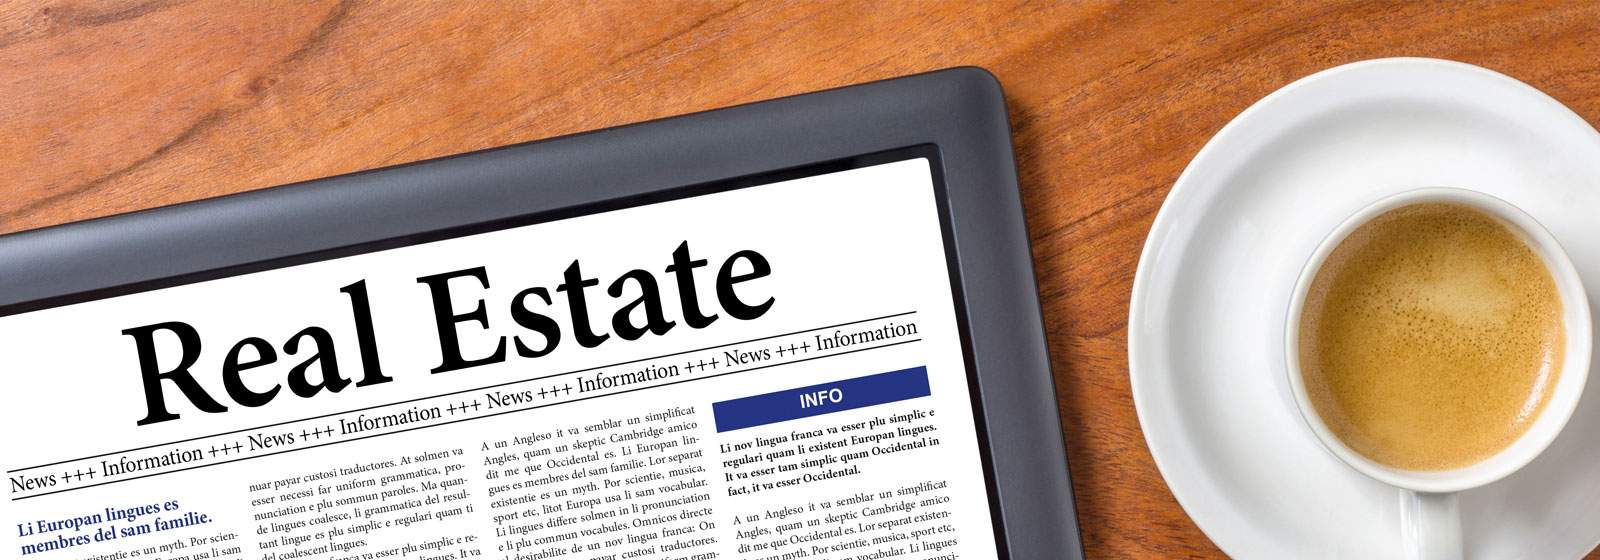 News Florida Rebate Real Estate